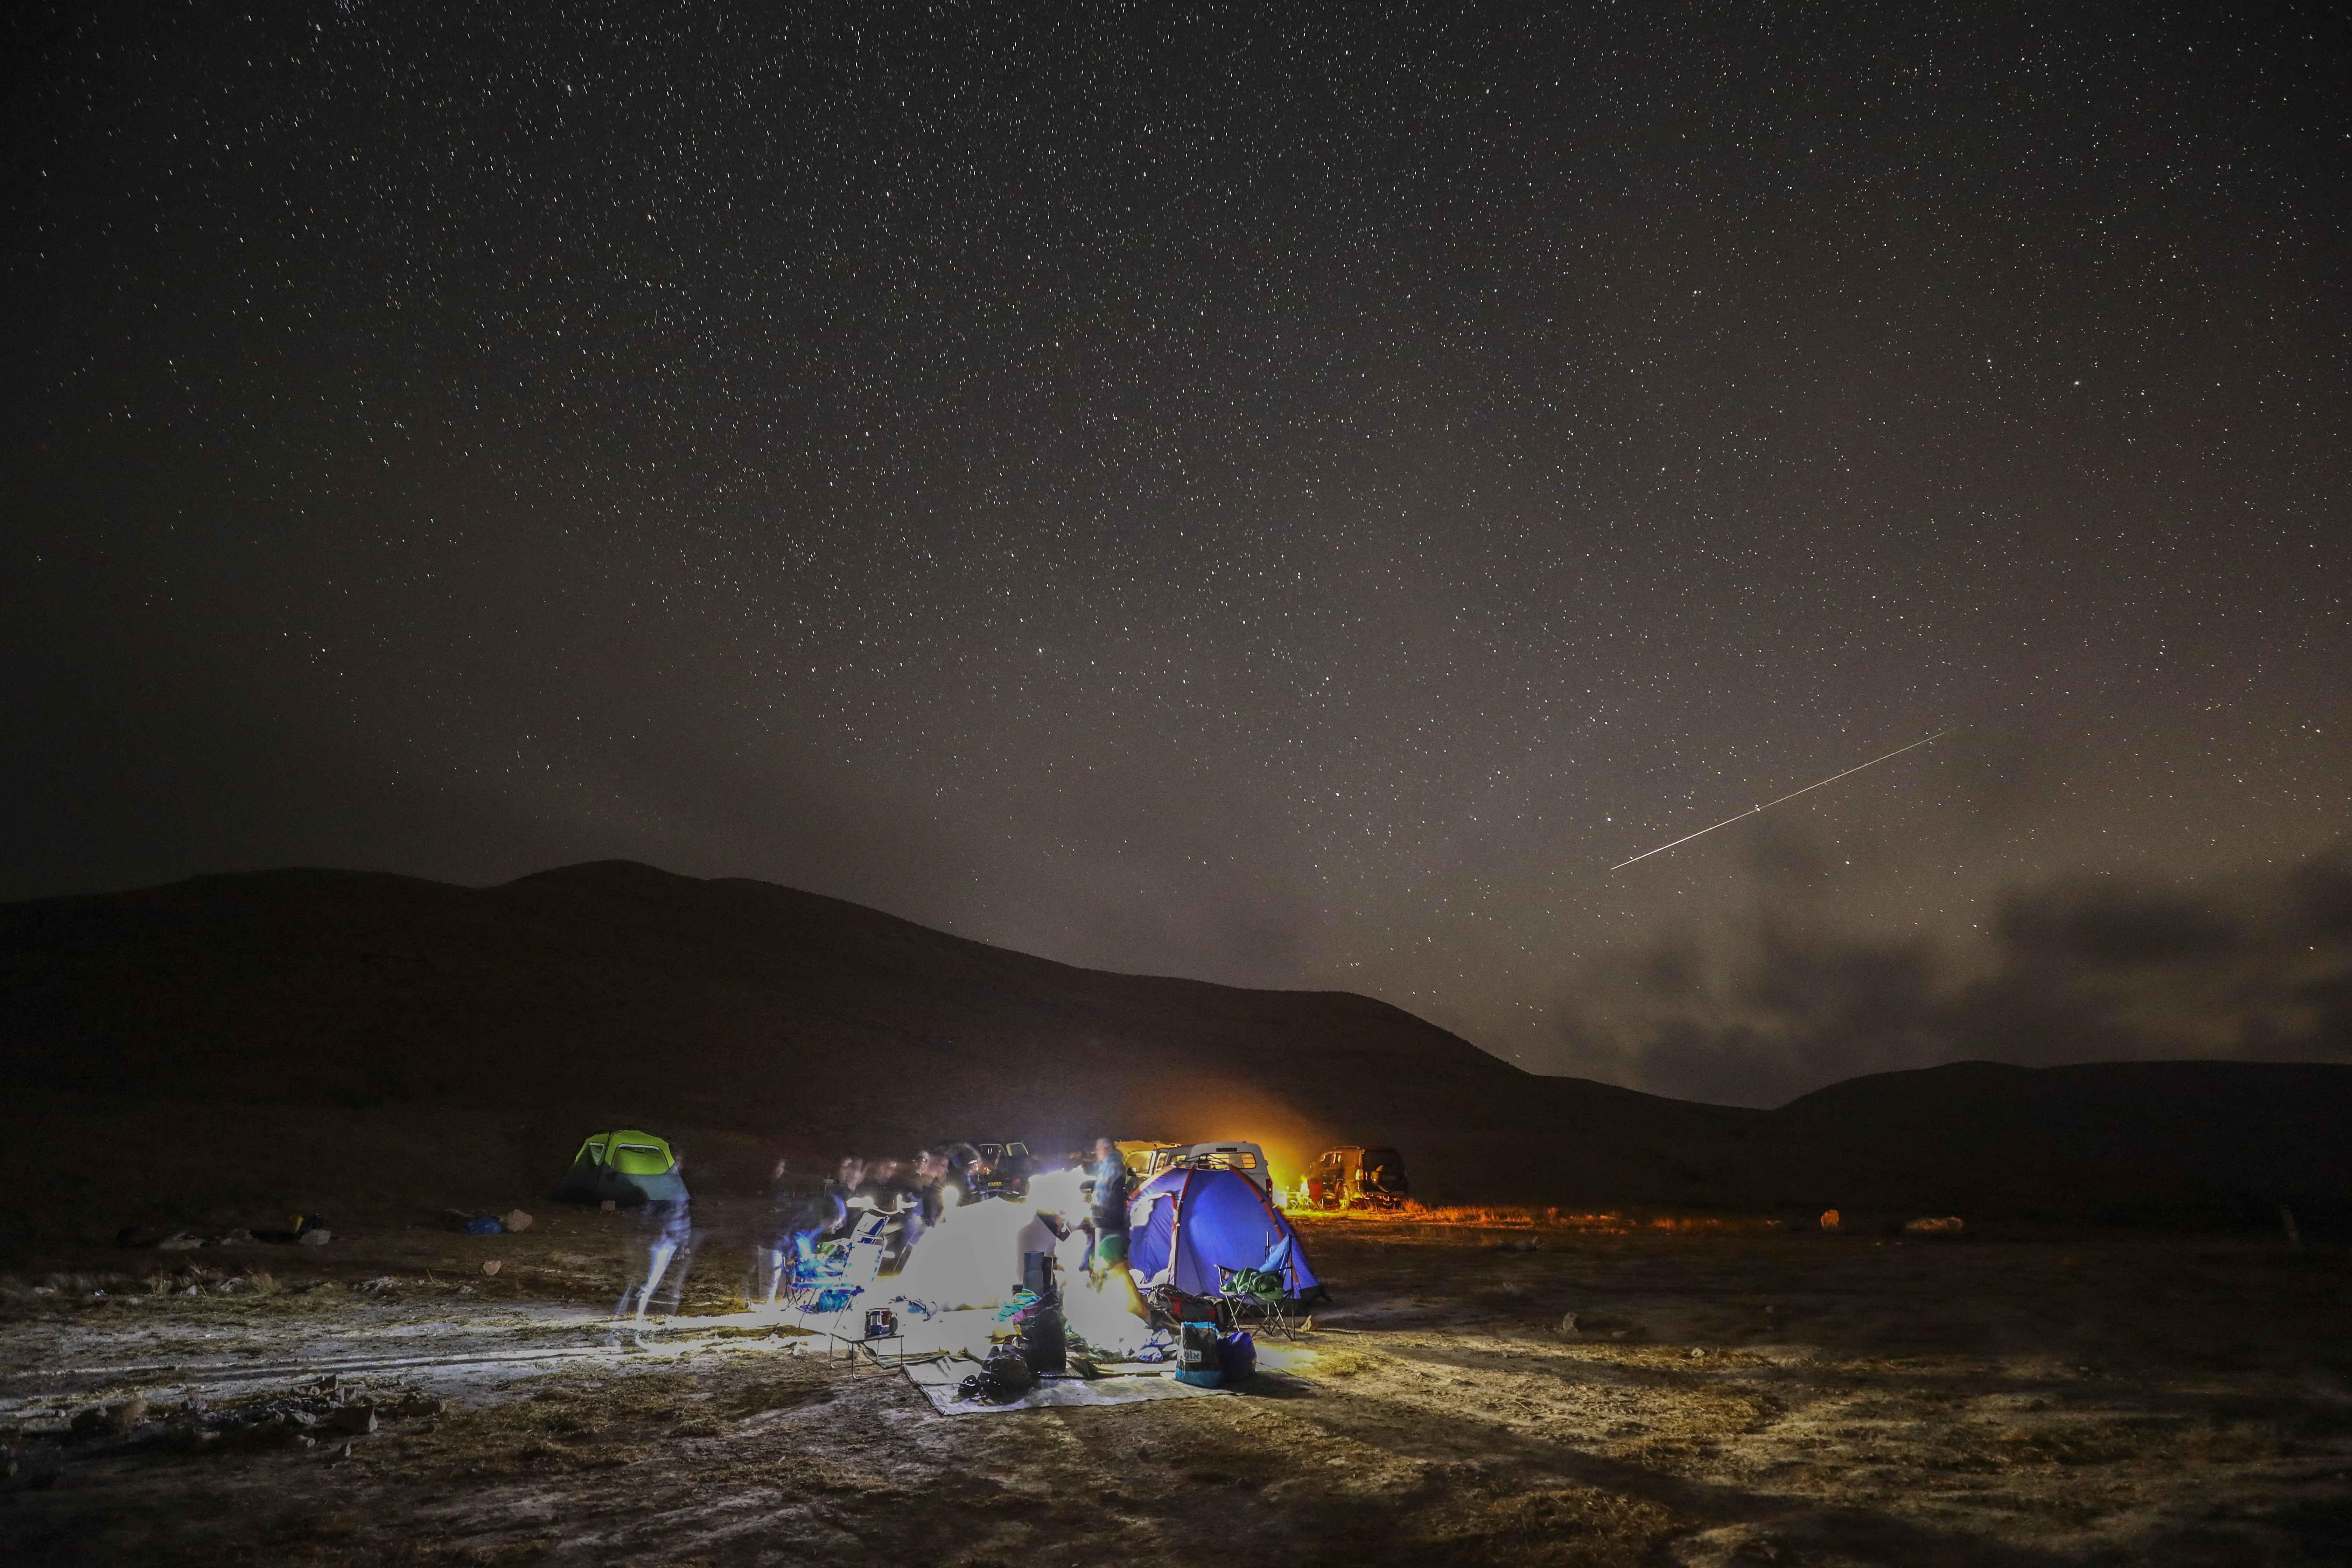 Un meteoro de las Perseidas surca el cielo sobre un camping en el desierto del Néguev, Israel (Foto de MENAHEM KAHANA / AFP)